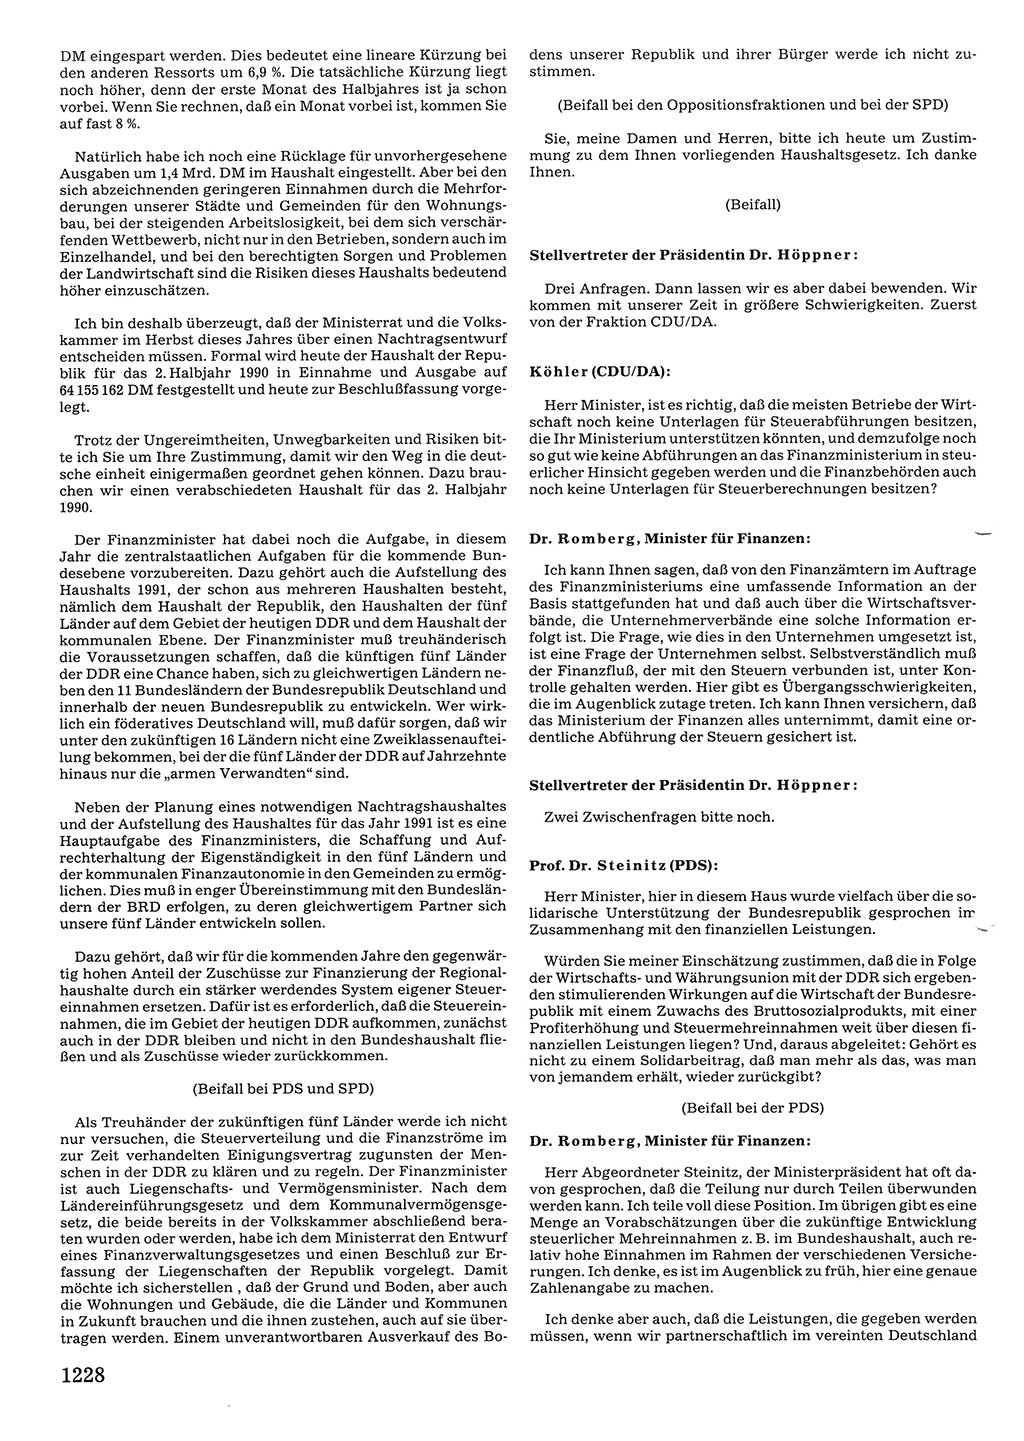 Tagungen der Volkskammer (VK) der Deutschen Demokratischen Republik (DDR), 10. Wahlperiode 1990, Seite 1228 (VK. DDR 10. WP. 1990, Prot. Tg. 1-38, 5.4.-2.10.1990, S. 1228)